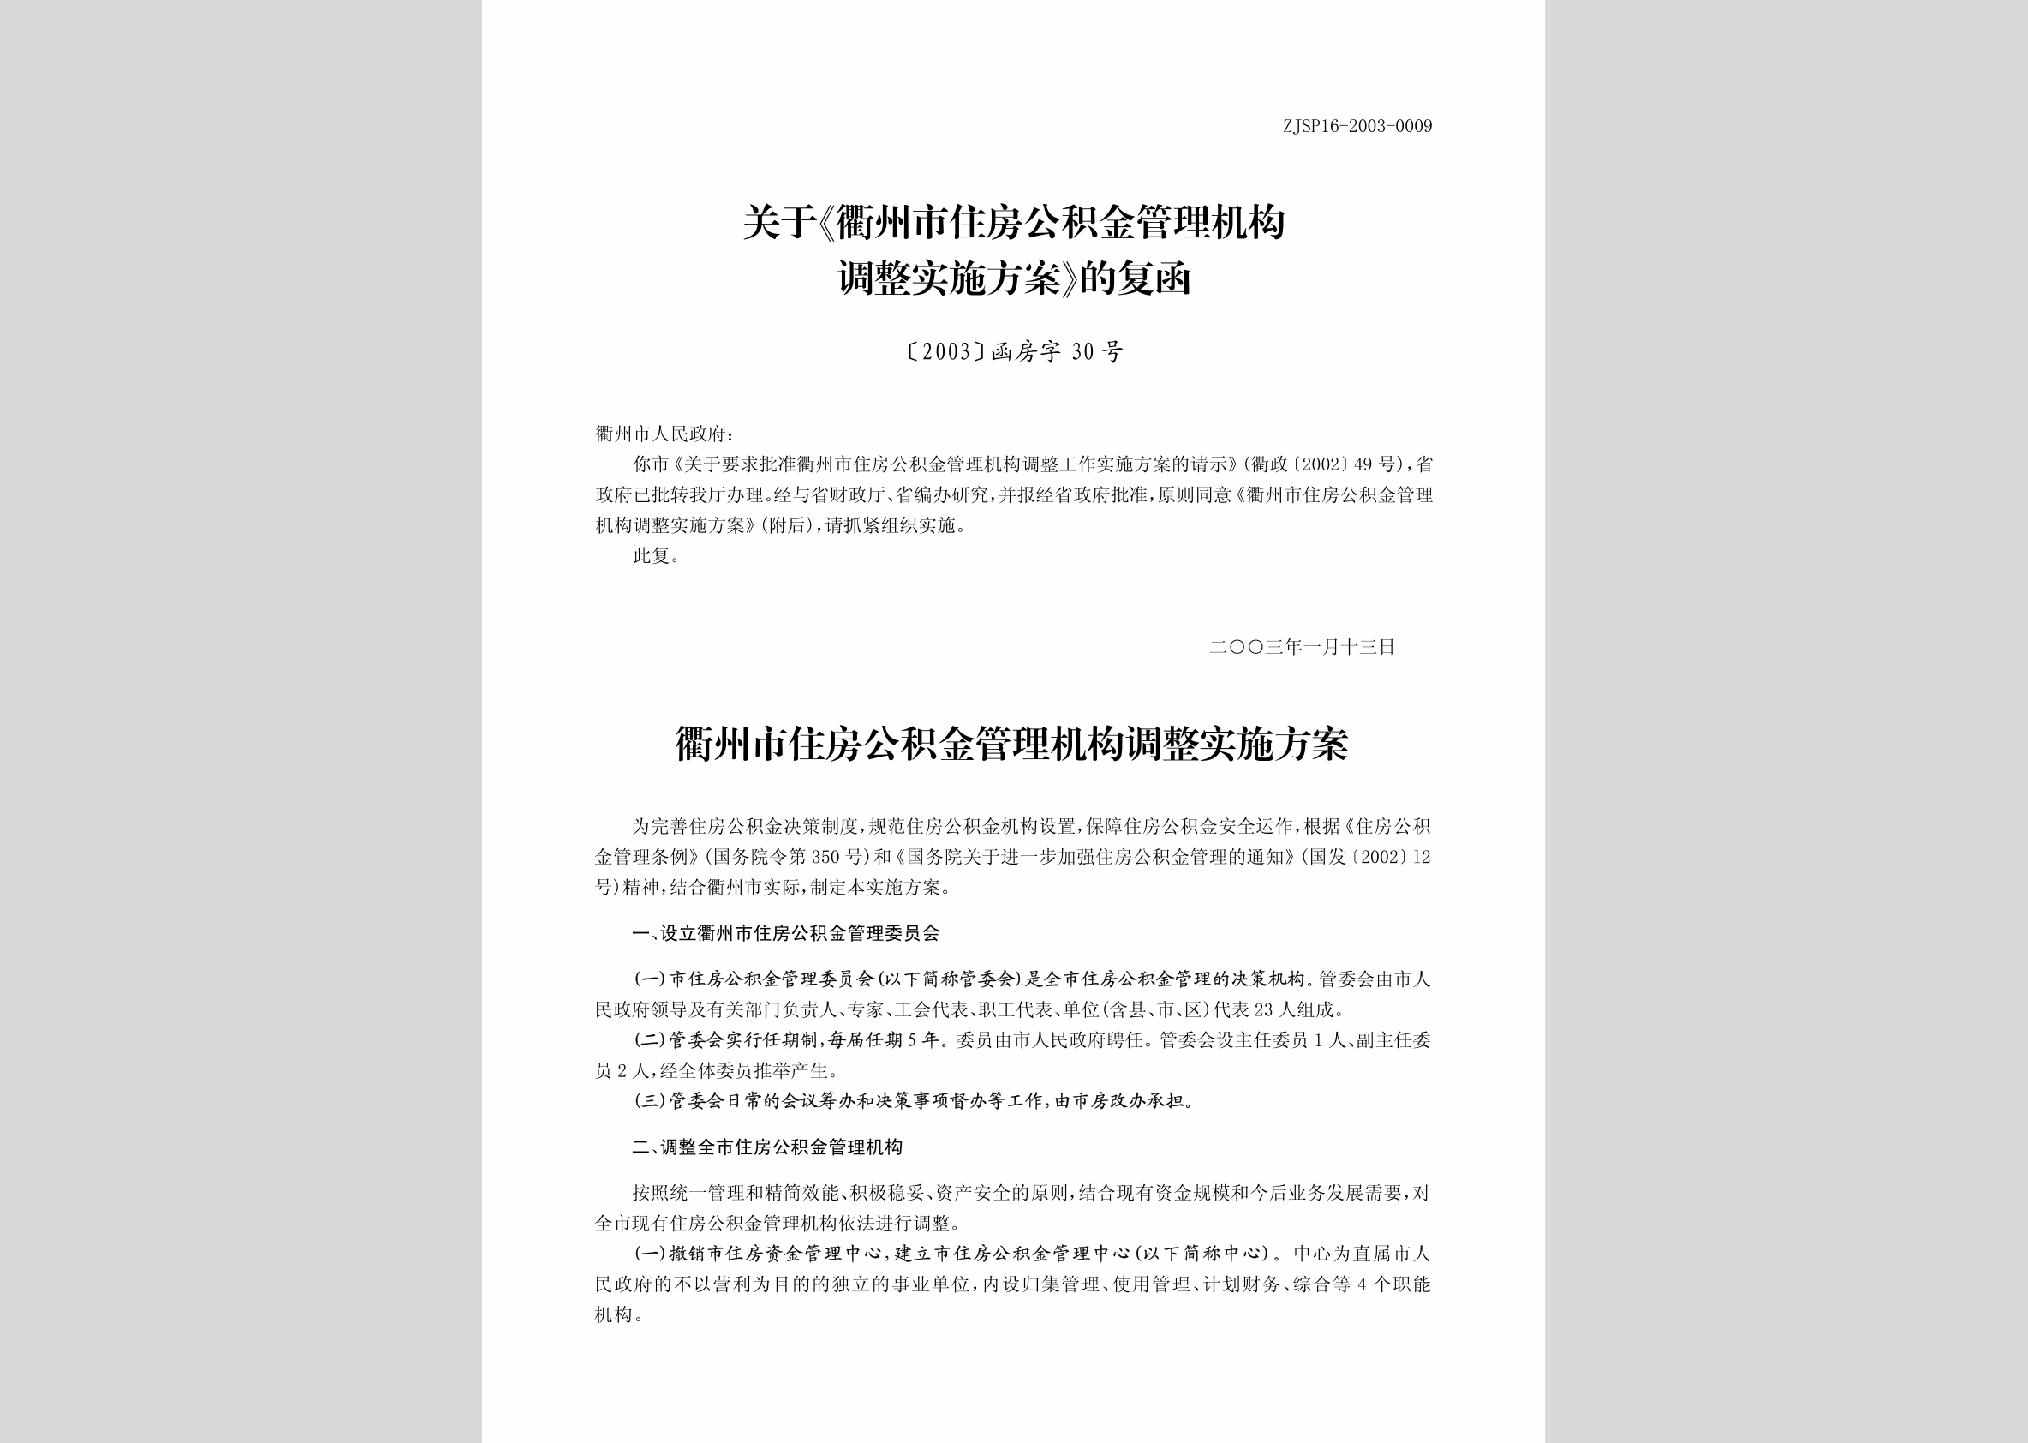 [2003]函房字30号：关于《衢州市住房公积金管理机构调整实施方案》的通知